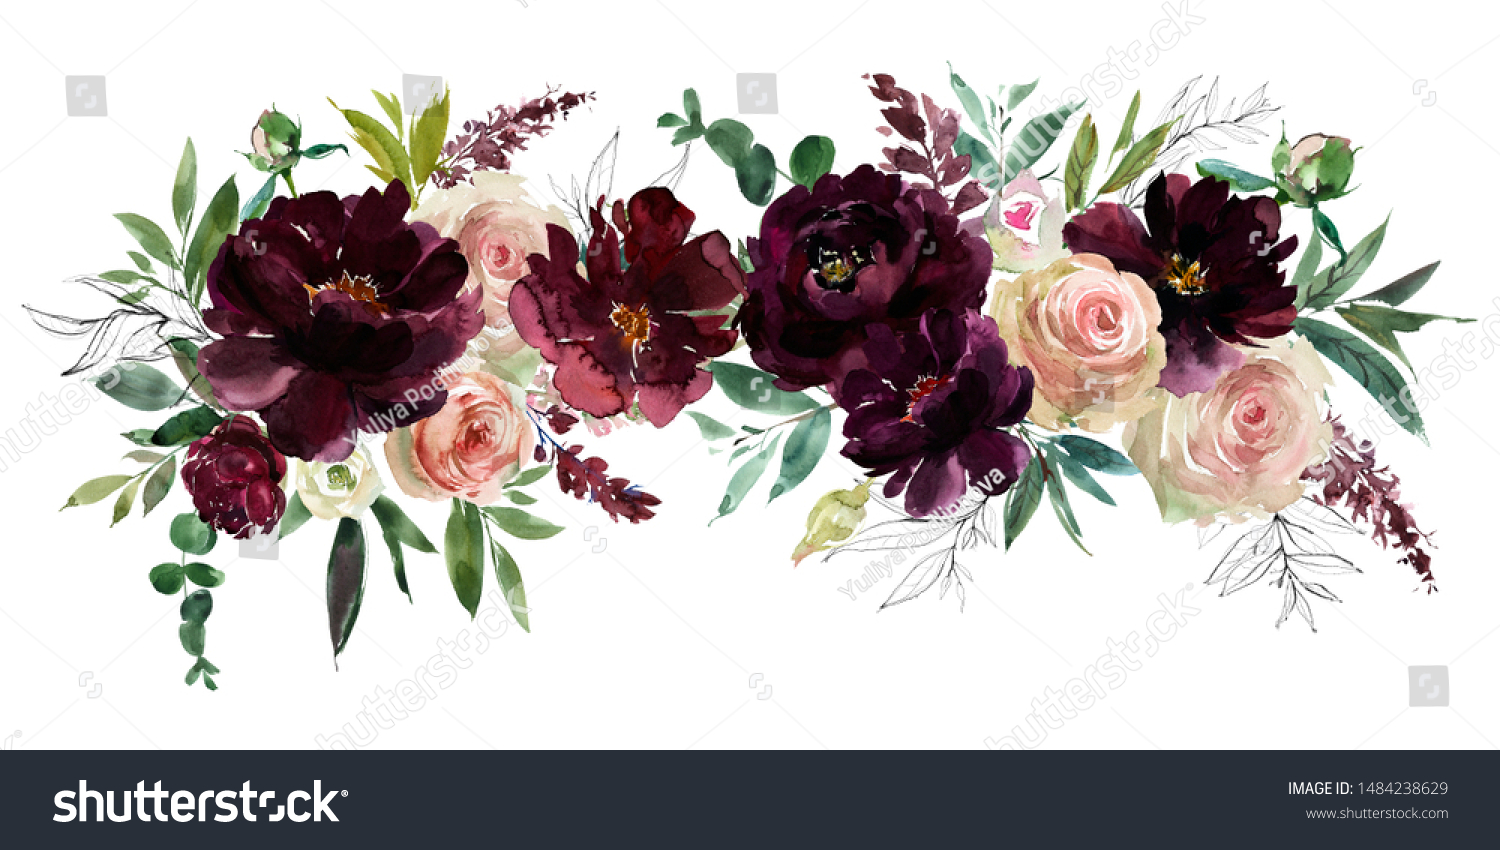 Download Blush Wine Colors Watercolor Floral Arrangements Stock Illustration 1484238629